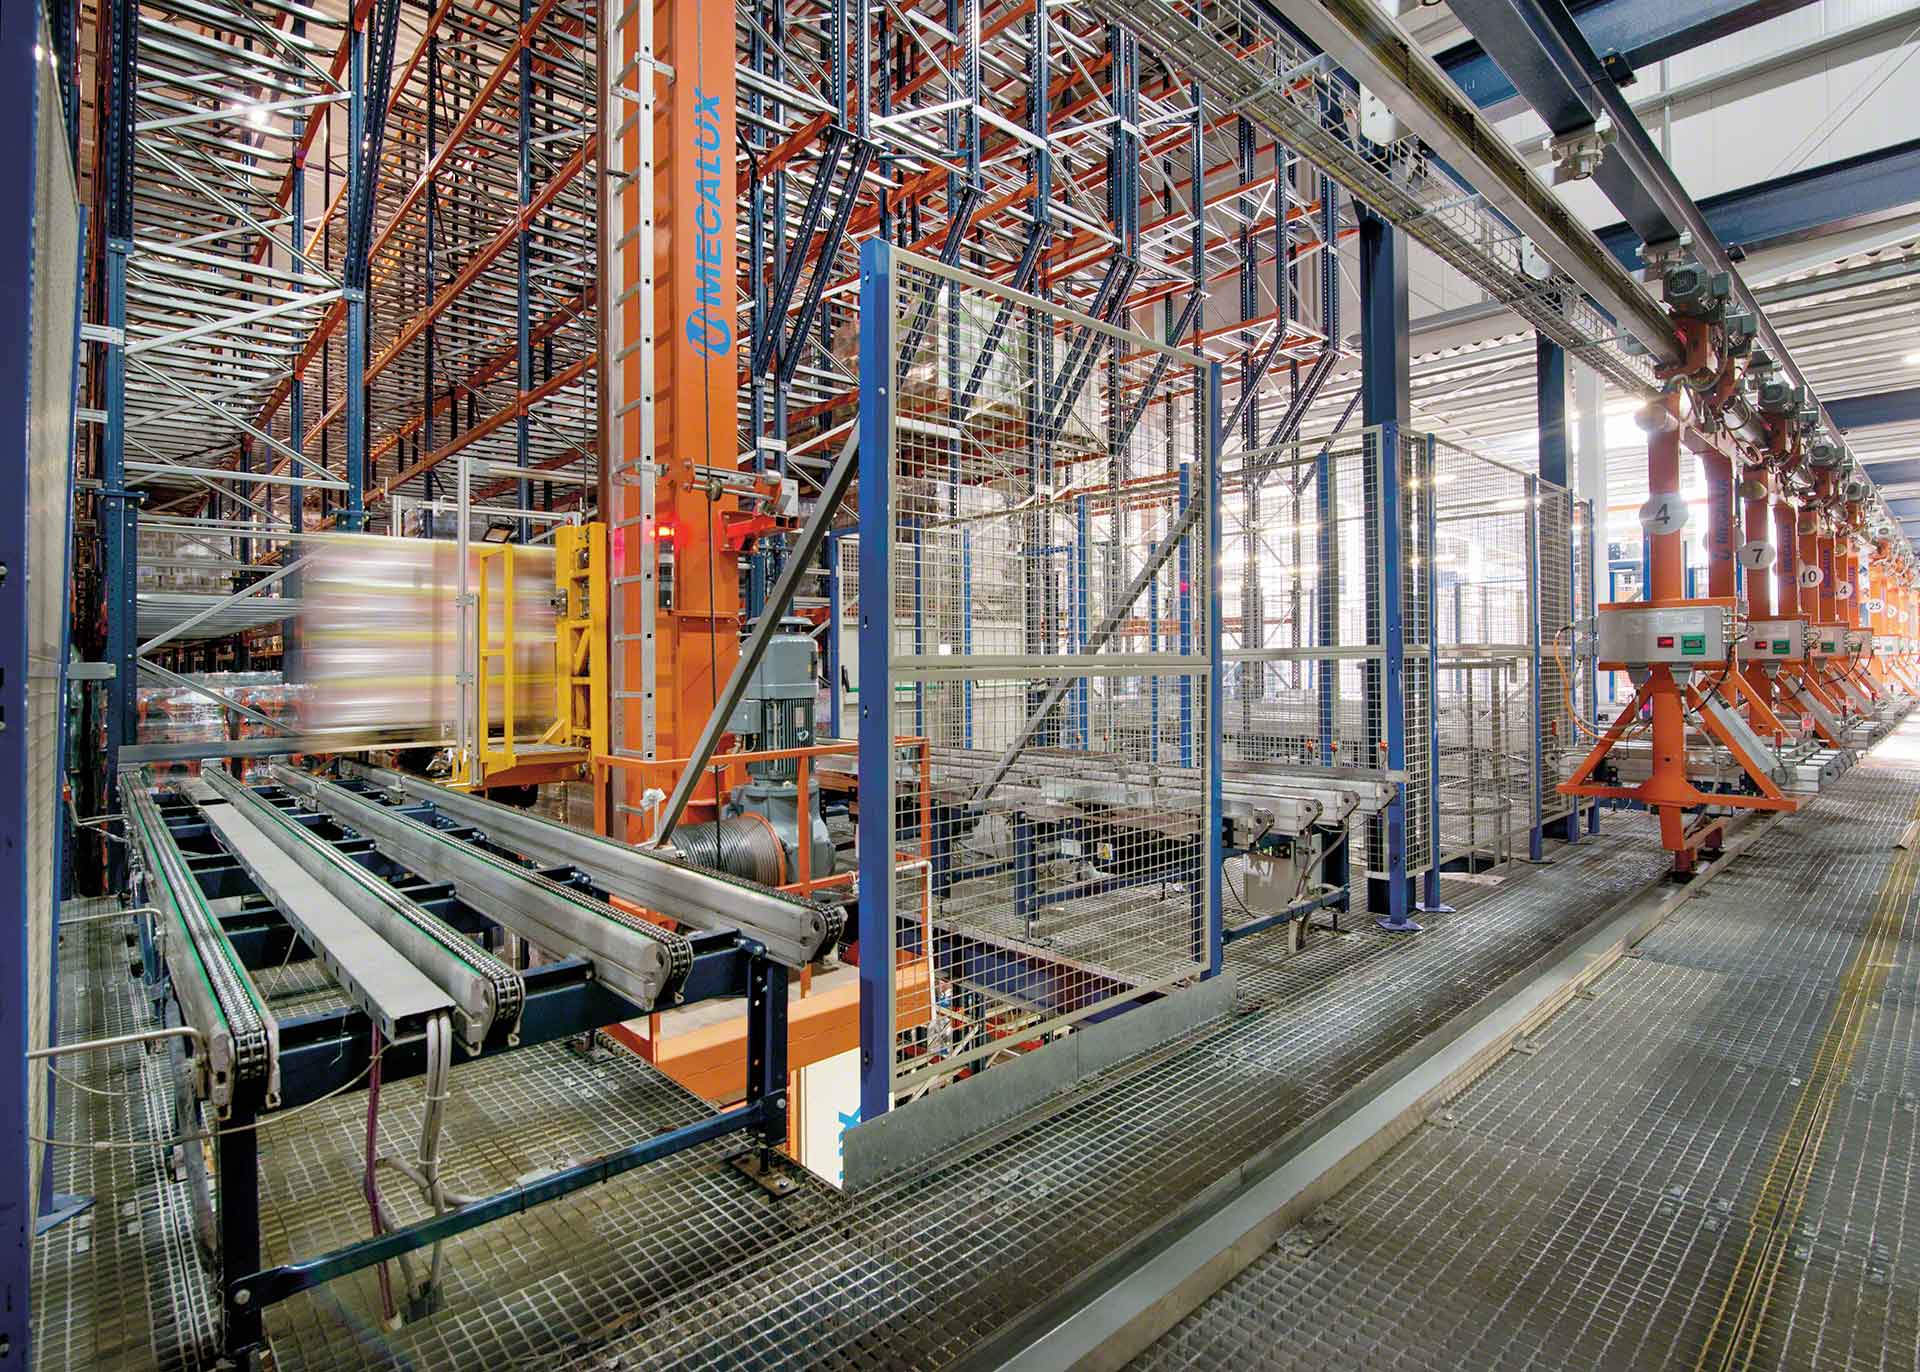 堆垛起重机的安装是物流工业过程自动化的一个例子